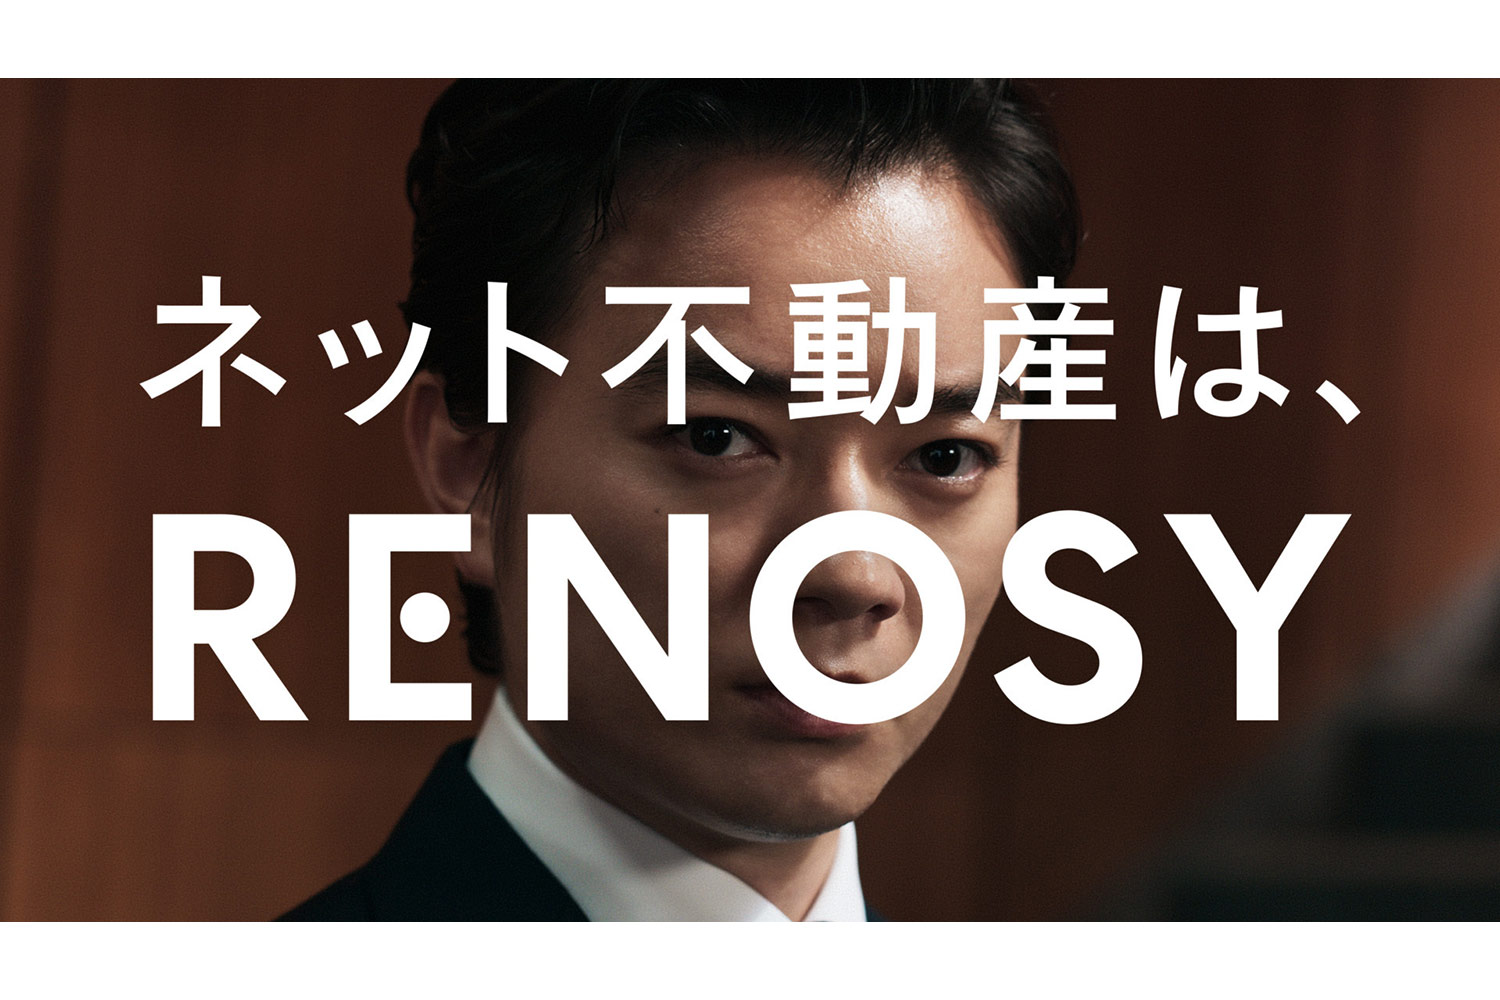 ネット不動産サービス「RENOSY」が染谷将太さんを起用し新CMを公開！ さらにターミナル駅や街中で広告展開も開始